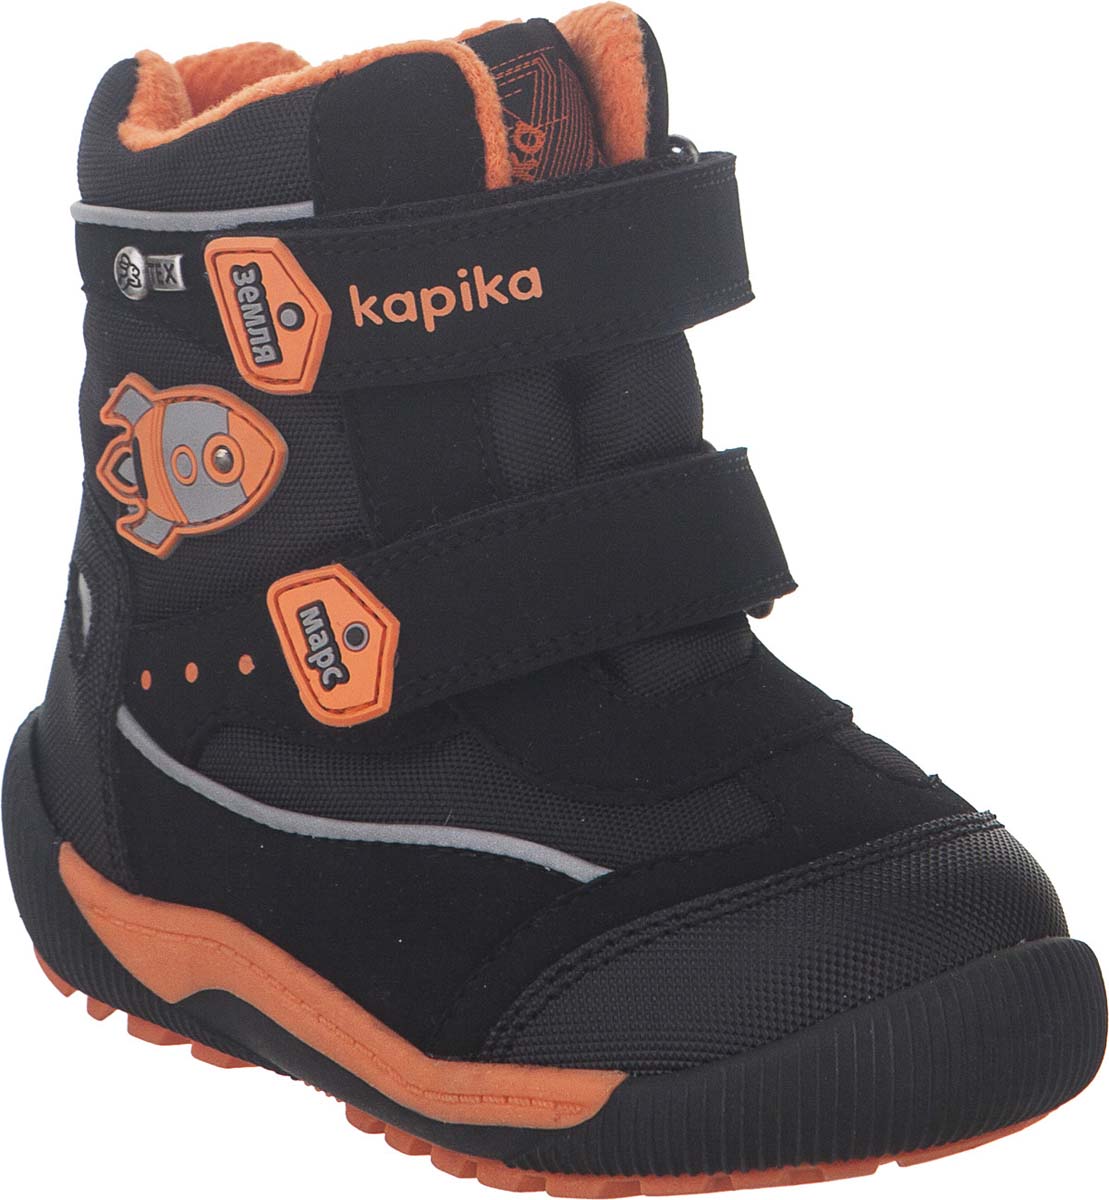 Ботинки для мальчика Kapika KapiTEX, цвет: черный. 41207-1. Размер 22